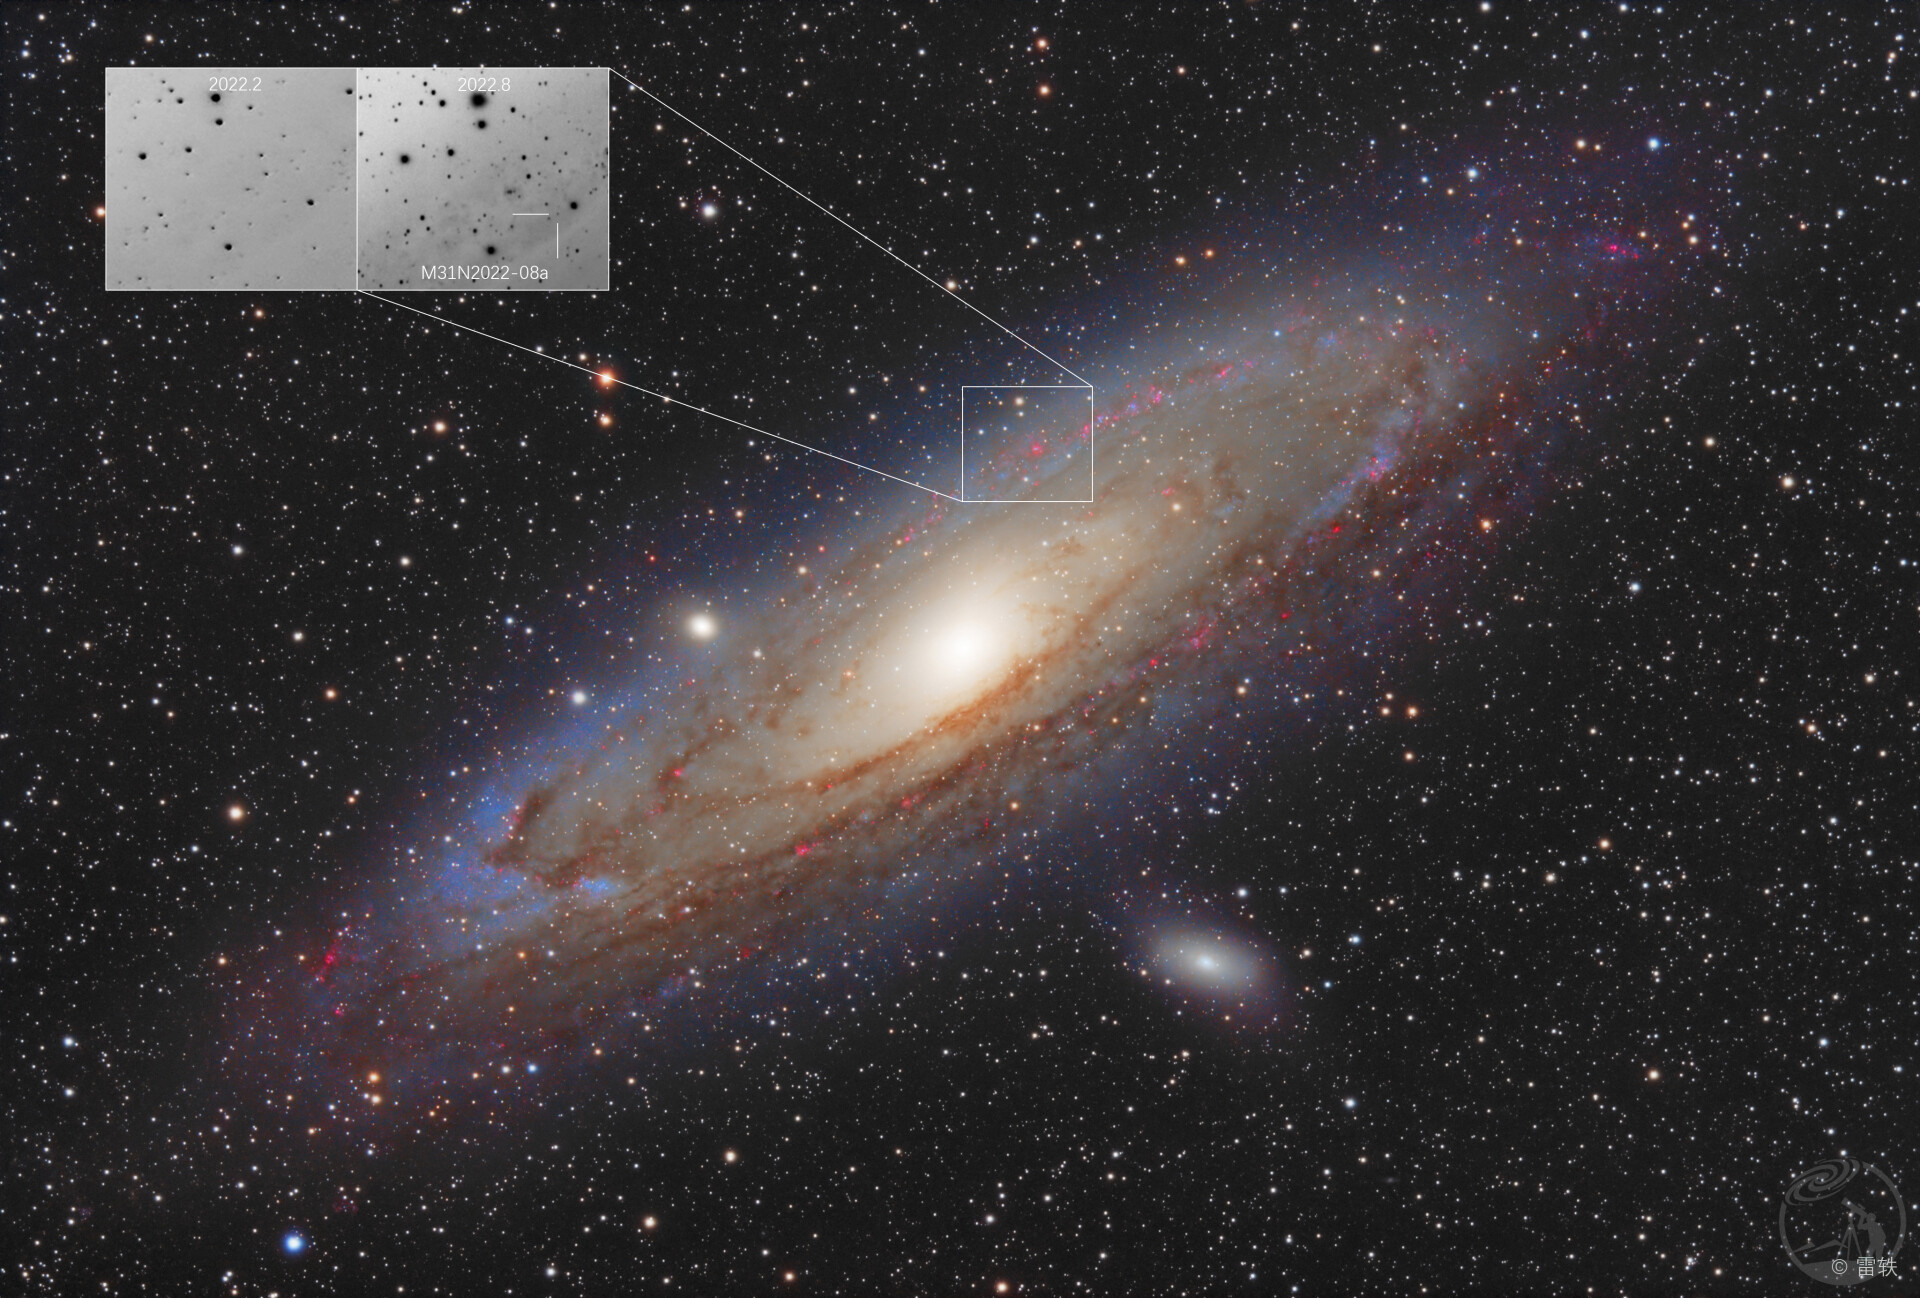 新星M31N2022-08a